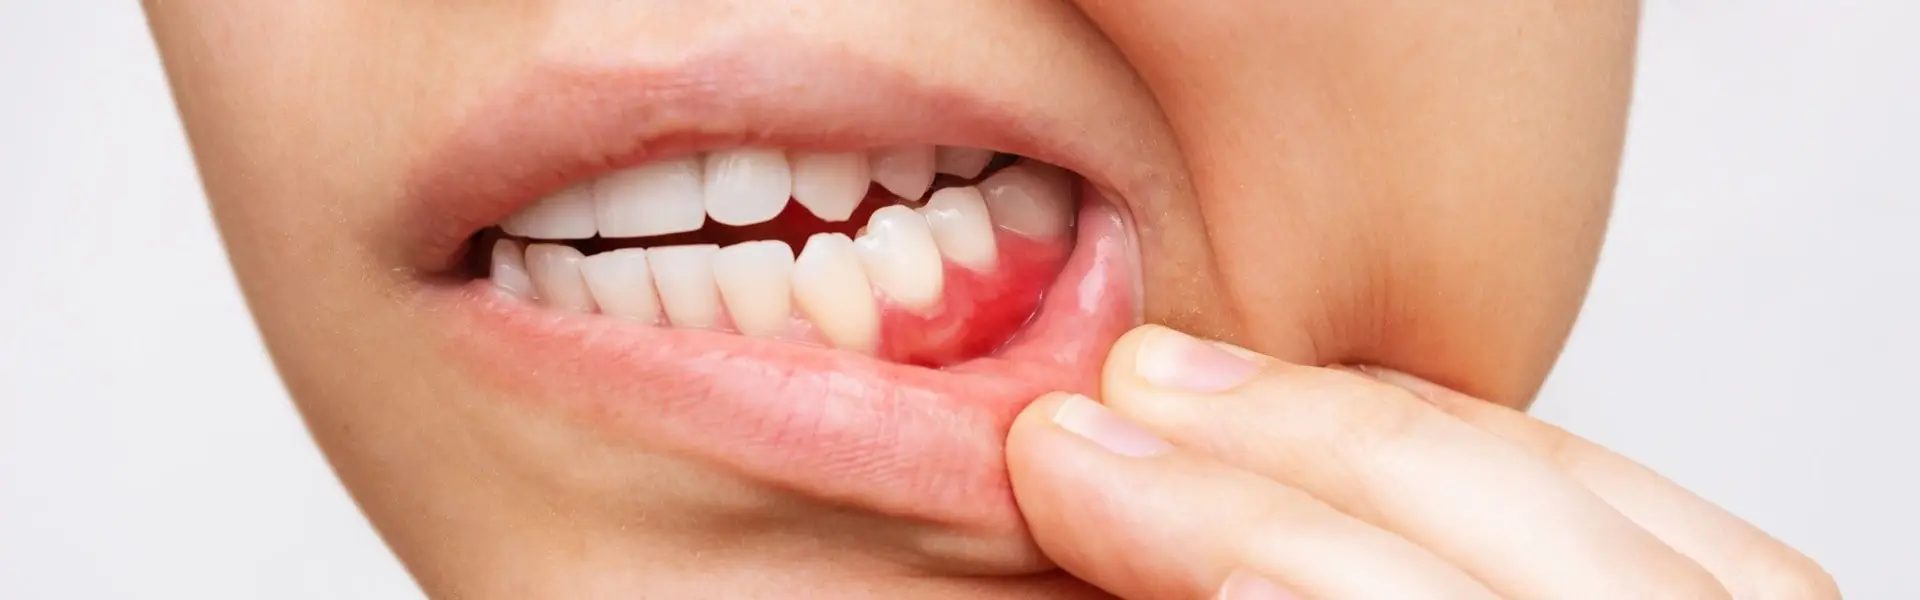 Народные средства для ухода за зубами и полостью рта - МастерДент